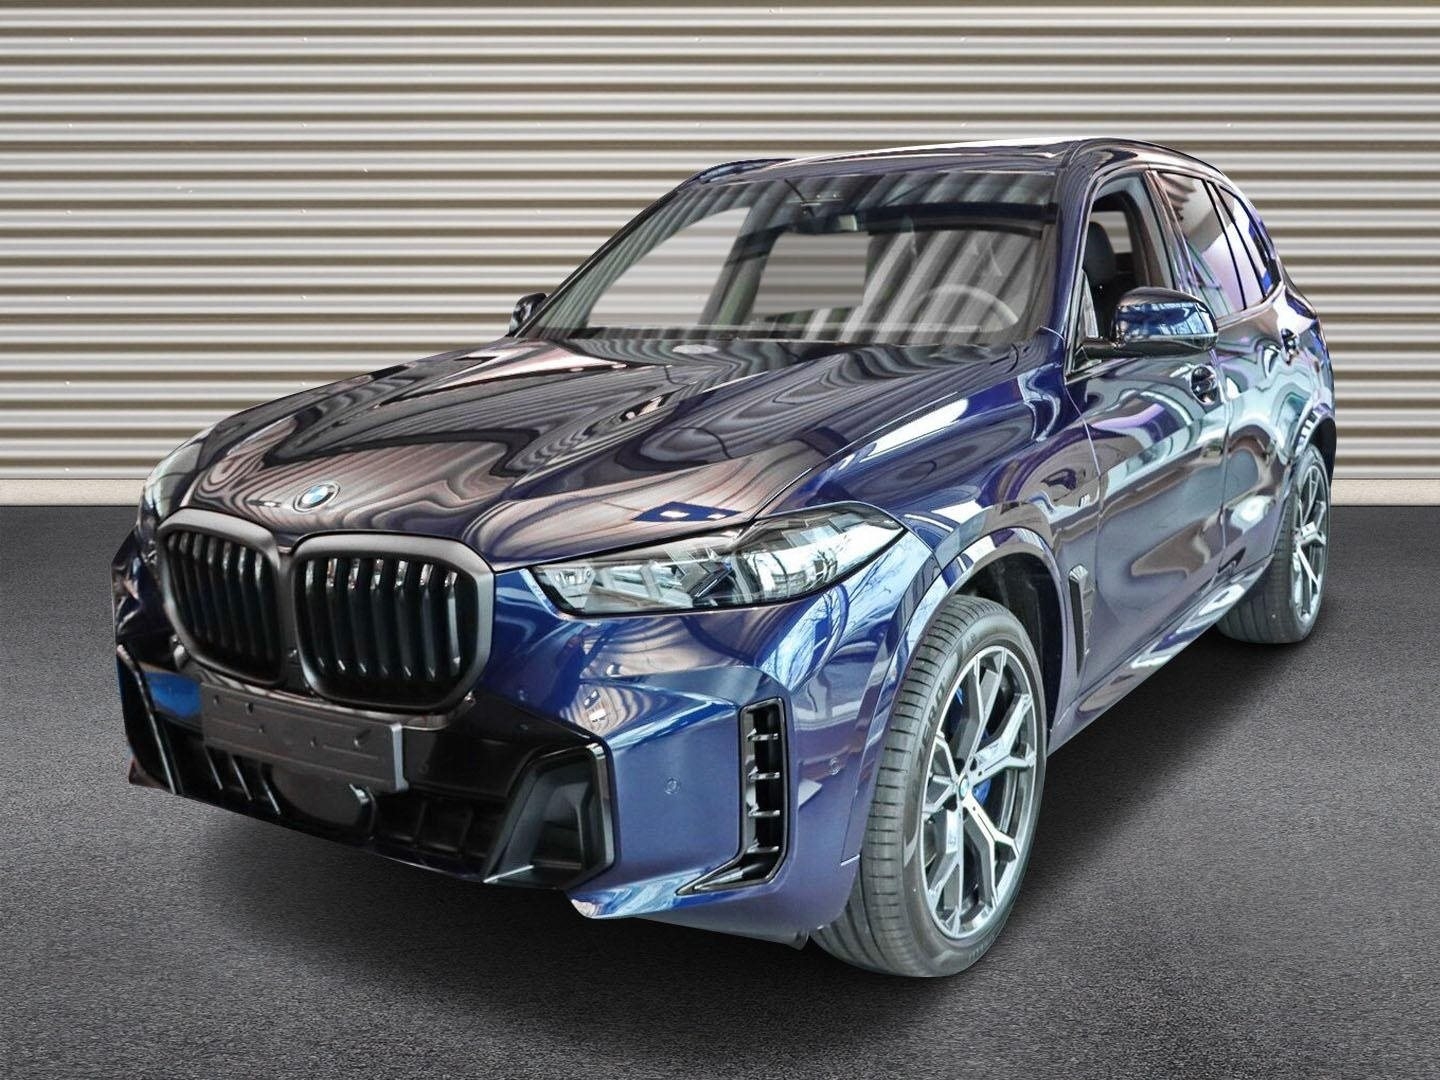 BMW X5 xDrive30d 